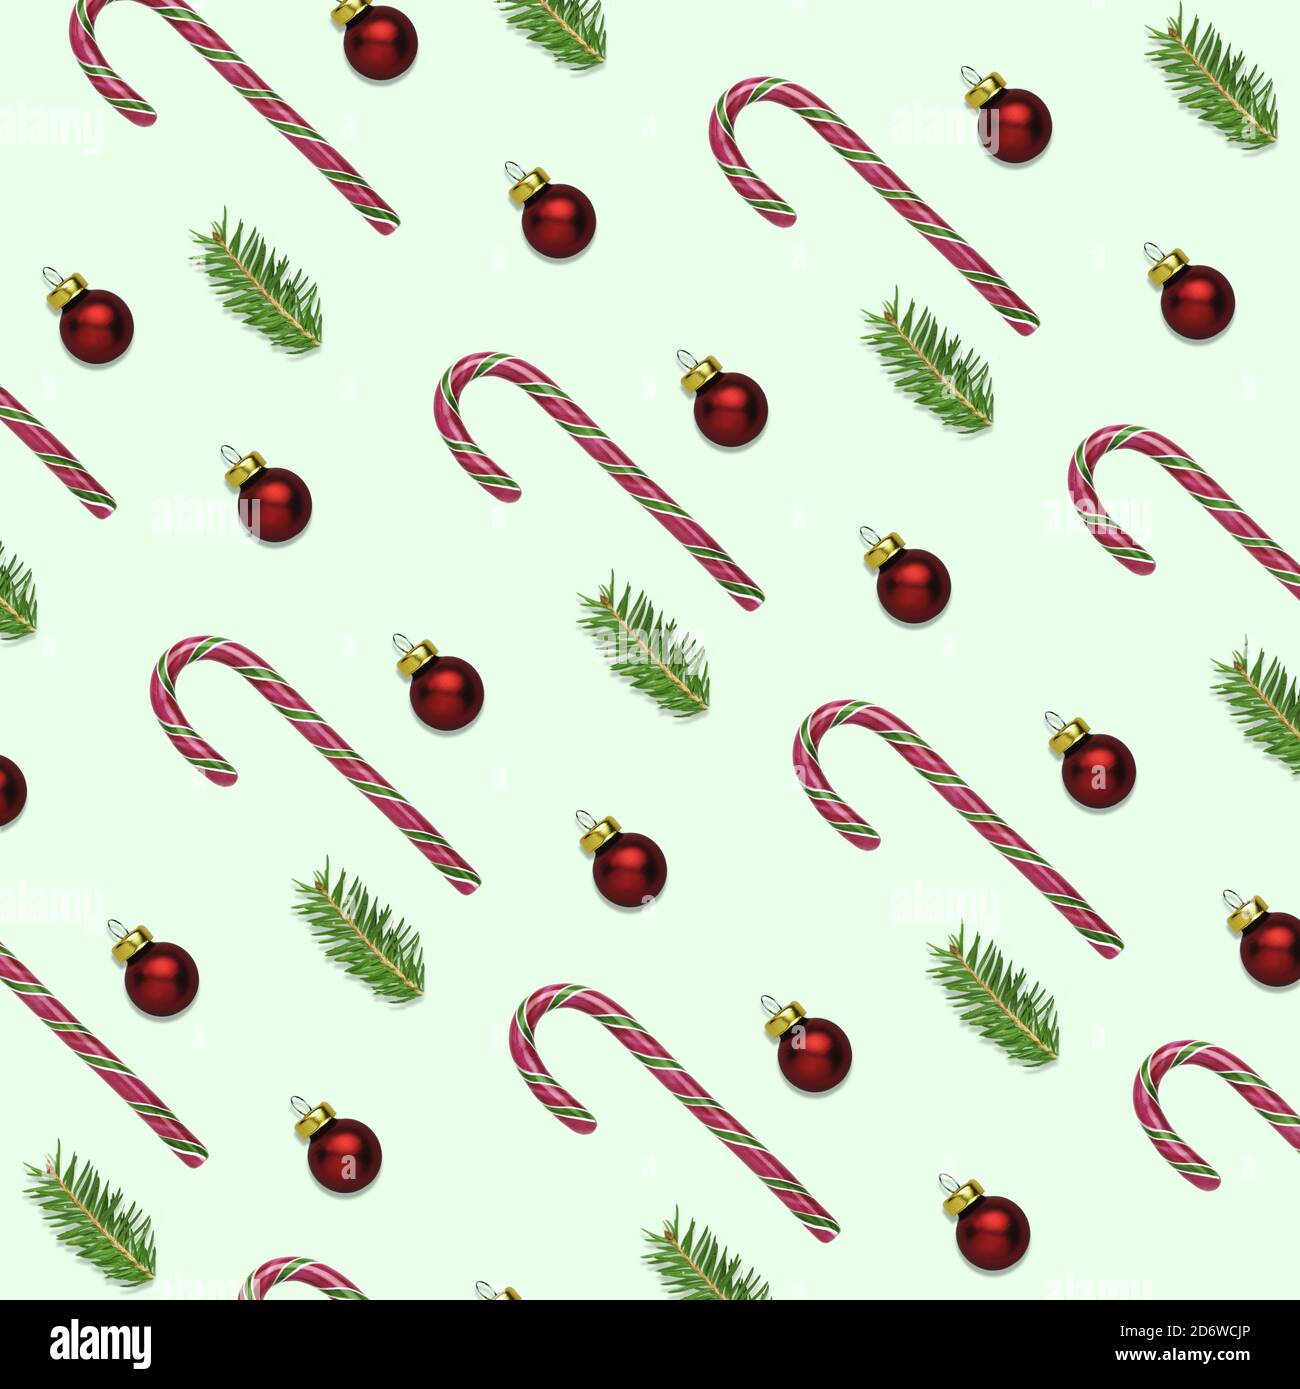 Ilustración 3D de fondo verde de Navidad o año Nuevo con bastones de caña de caramelo, bolas rojas y ramas de abeto. Concepto de papel para envolver para el invierno Foto de stock